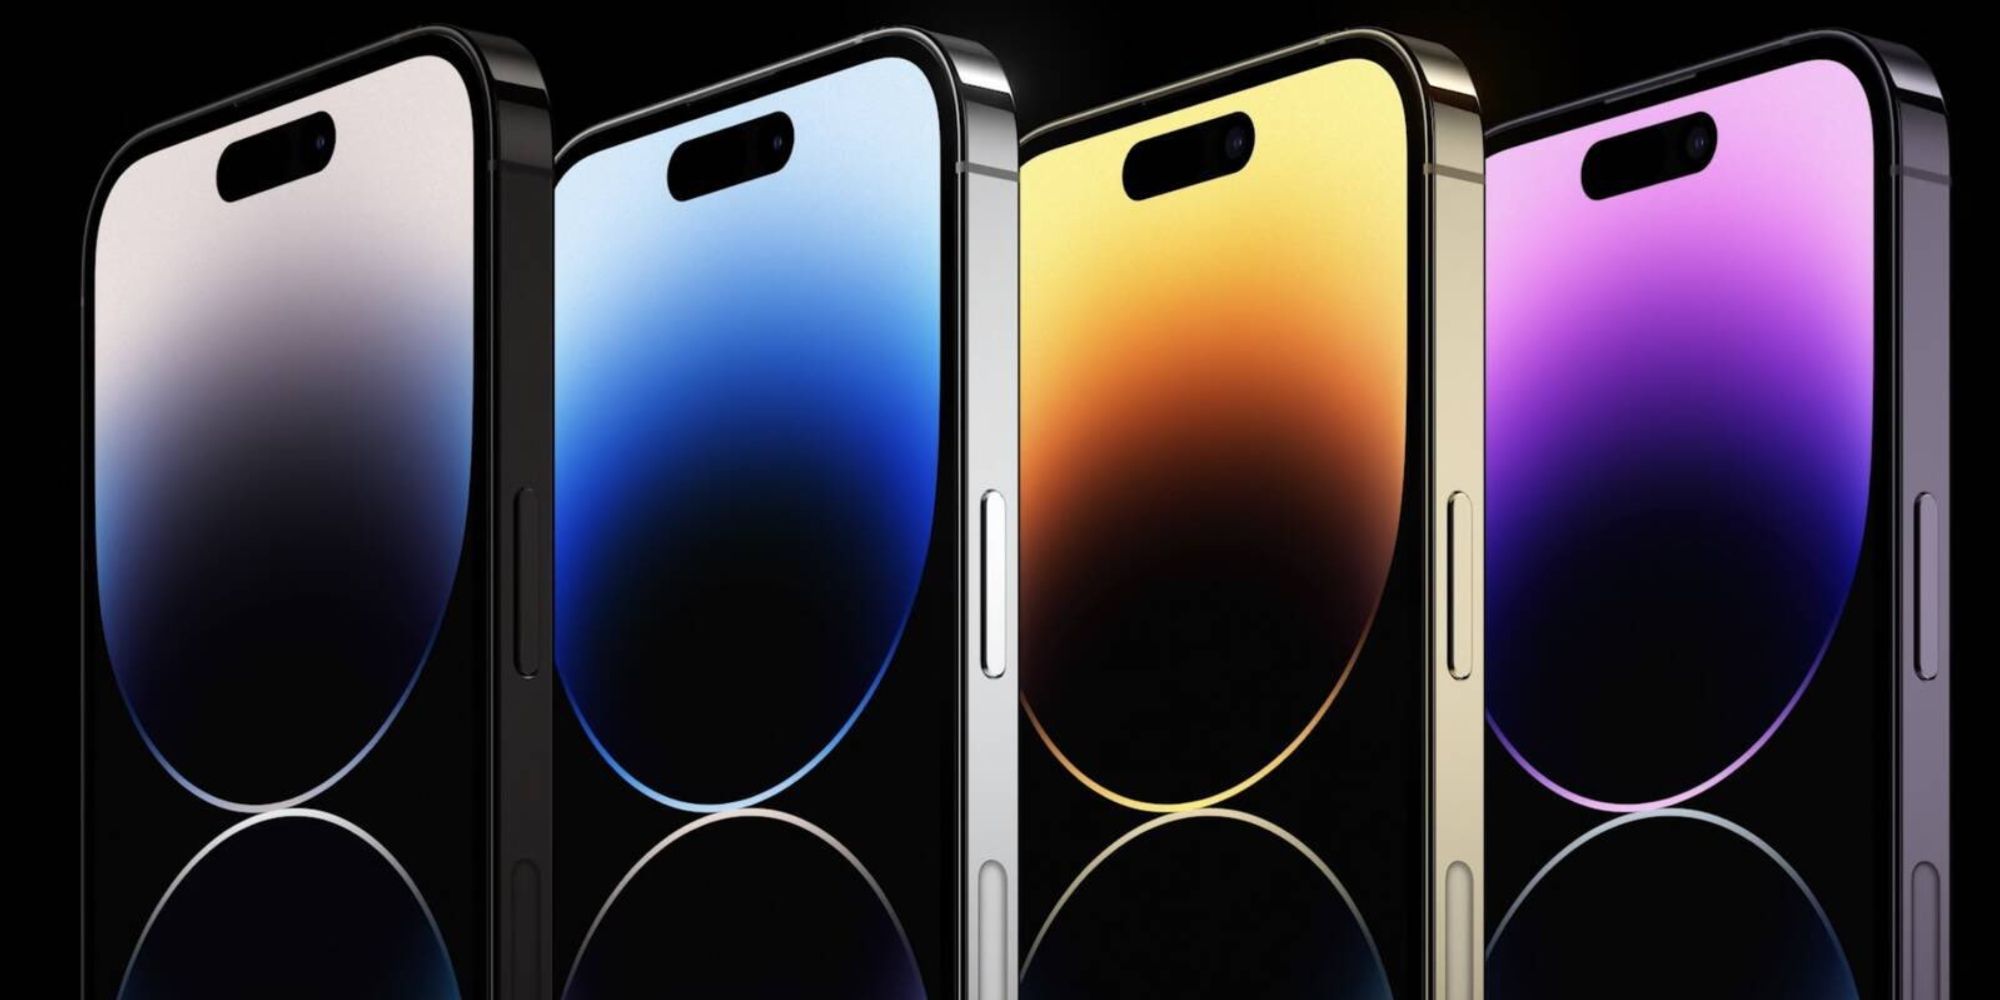 As novas cores para o iPhone 14 e iPhone 14 Pro.